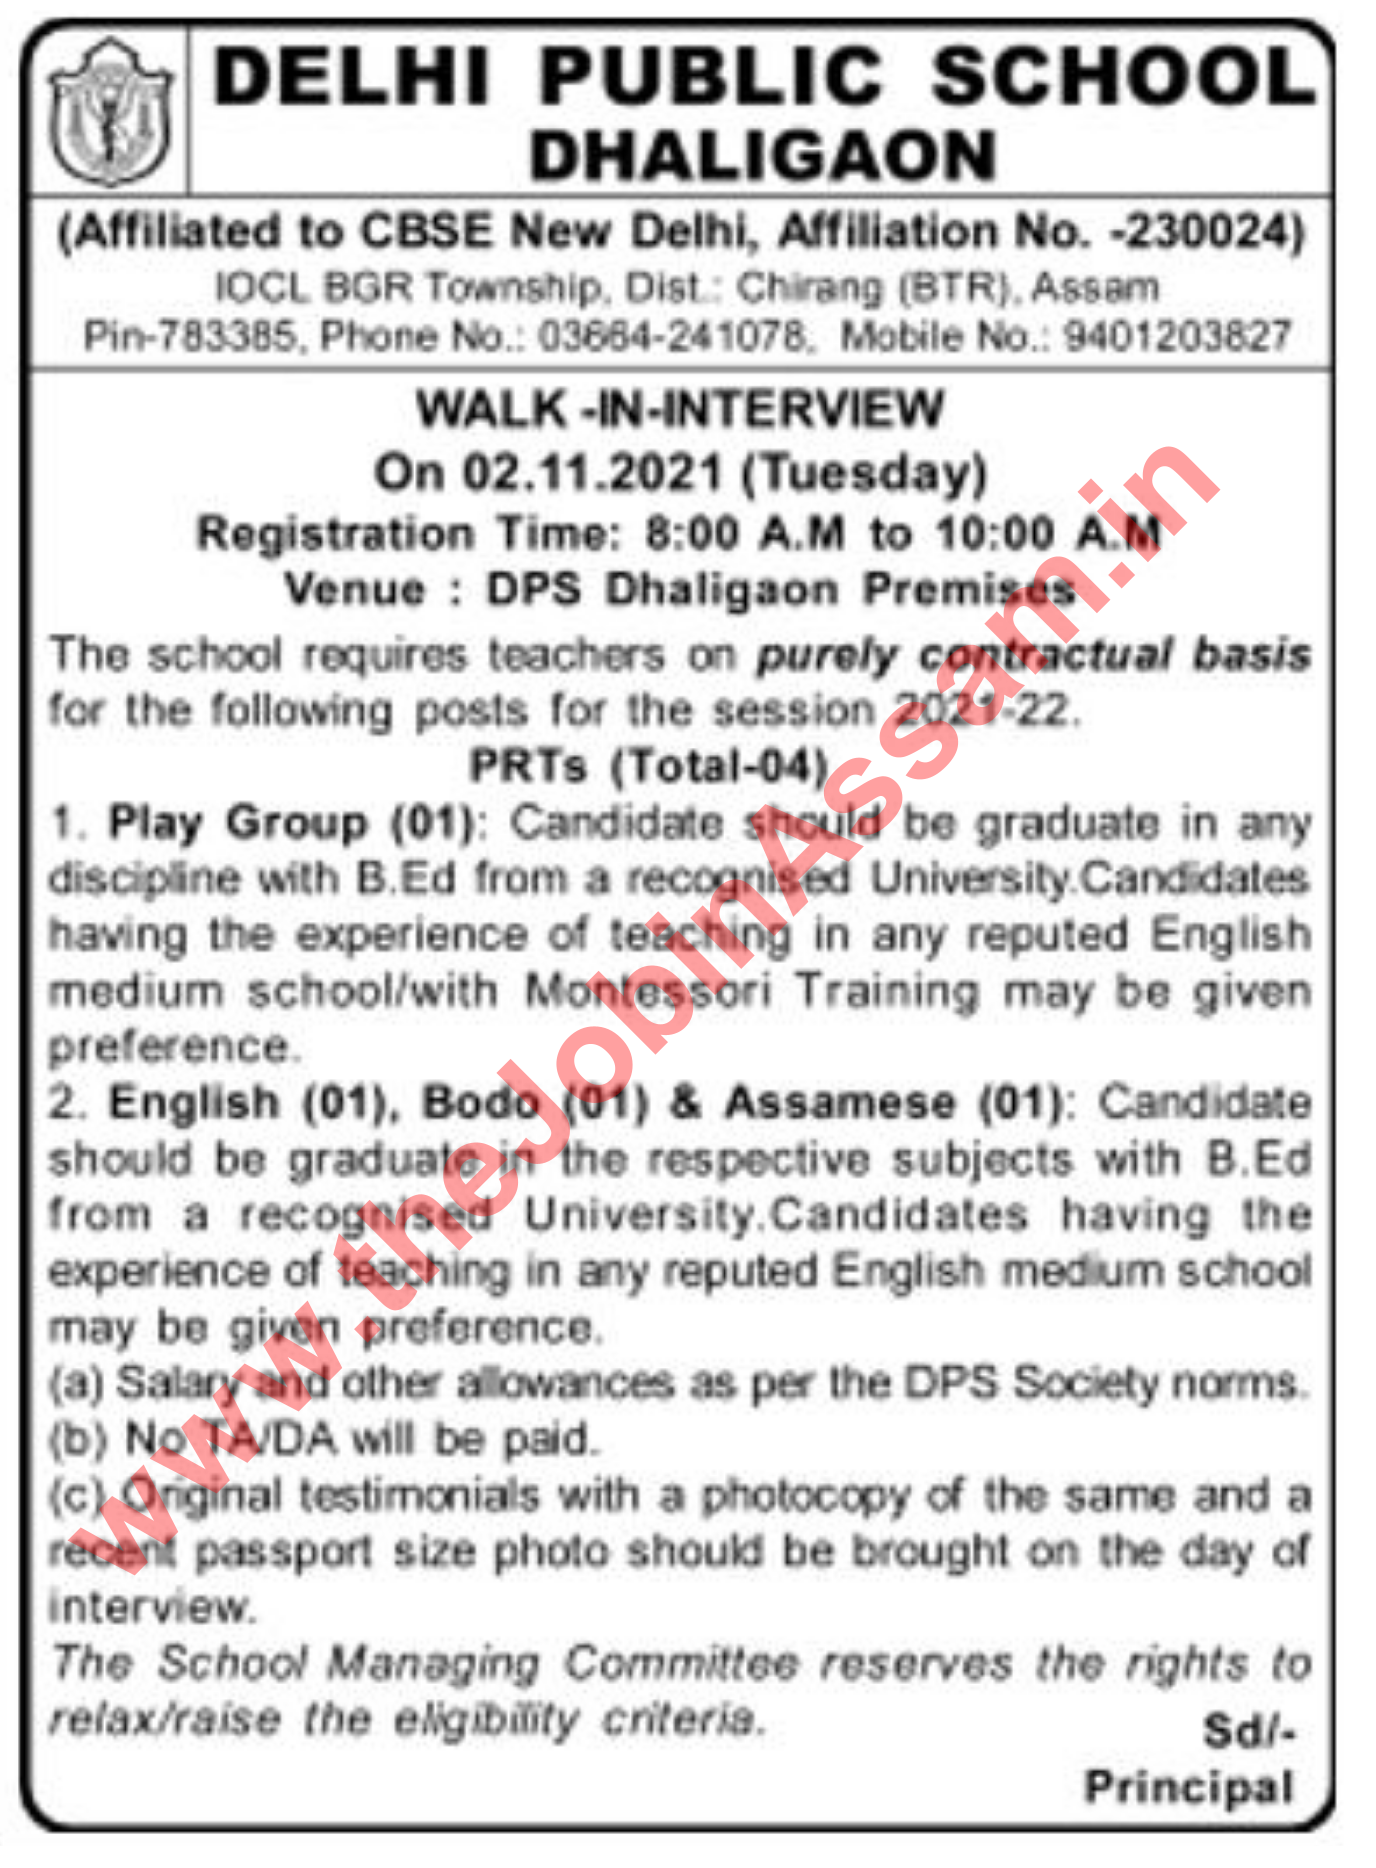 Delhi Public School Recruitment 2021